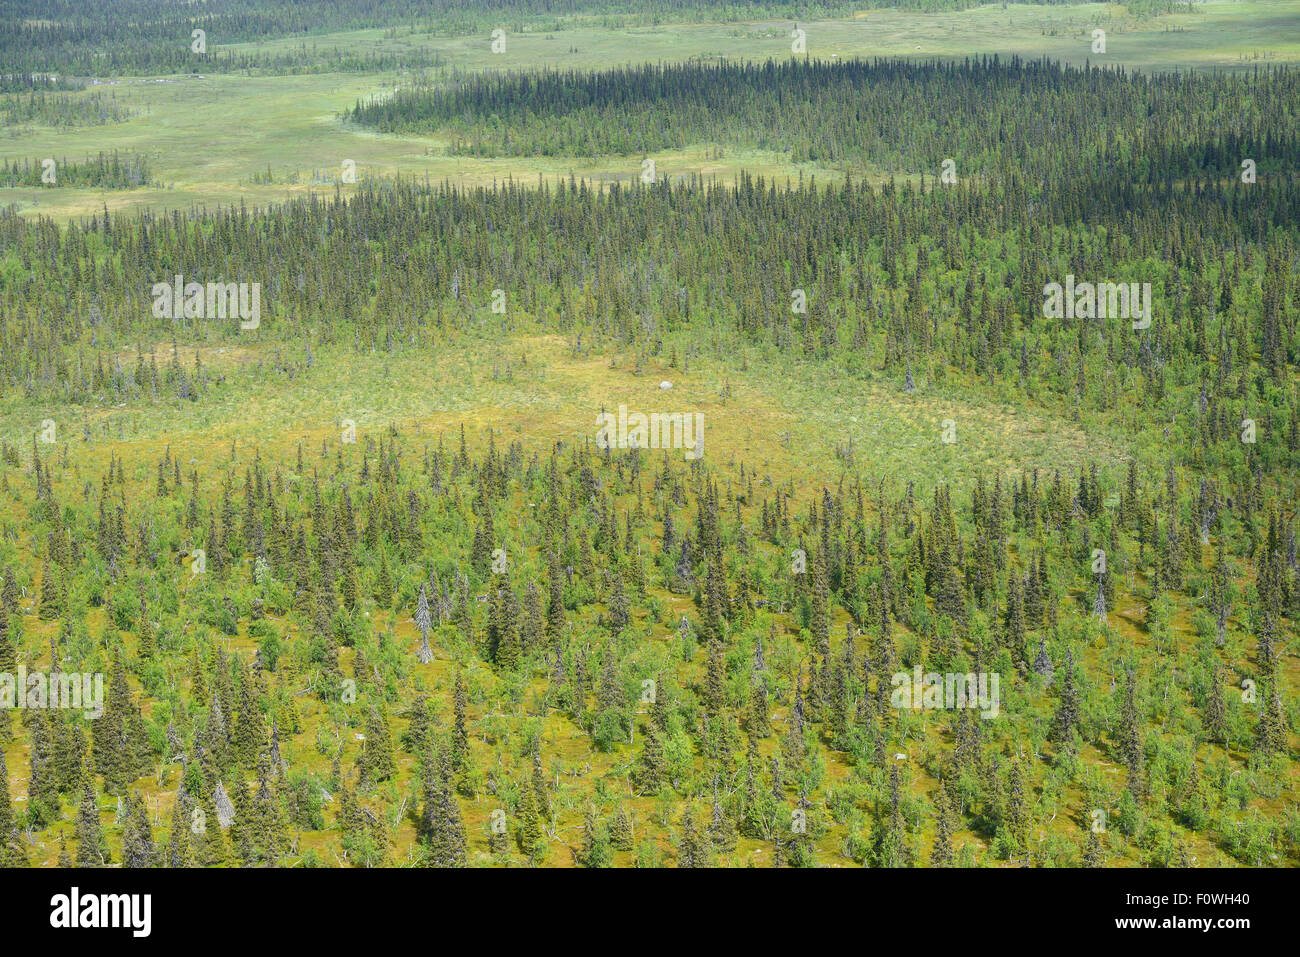 Vue aérienne de tourbières de la forêt boréale et de la taïga, Sjaunja Zone de protection des oiseaux, une plus grande zone de Laponia Rewilding, Laponie, Norrbotten, Suède, juin 2013. Banque D'Images